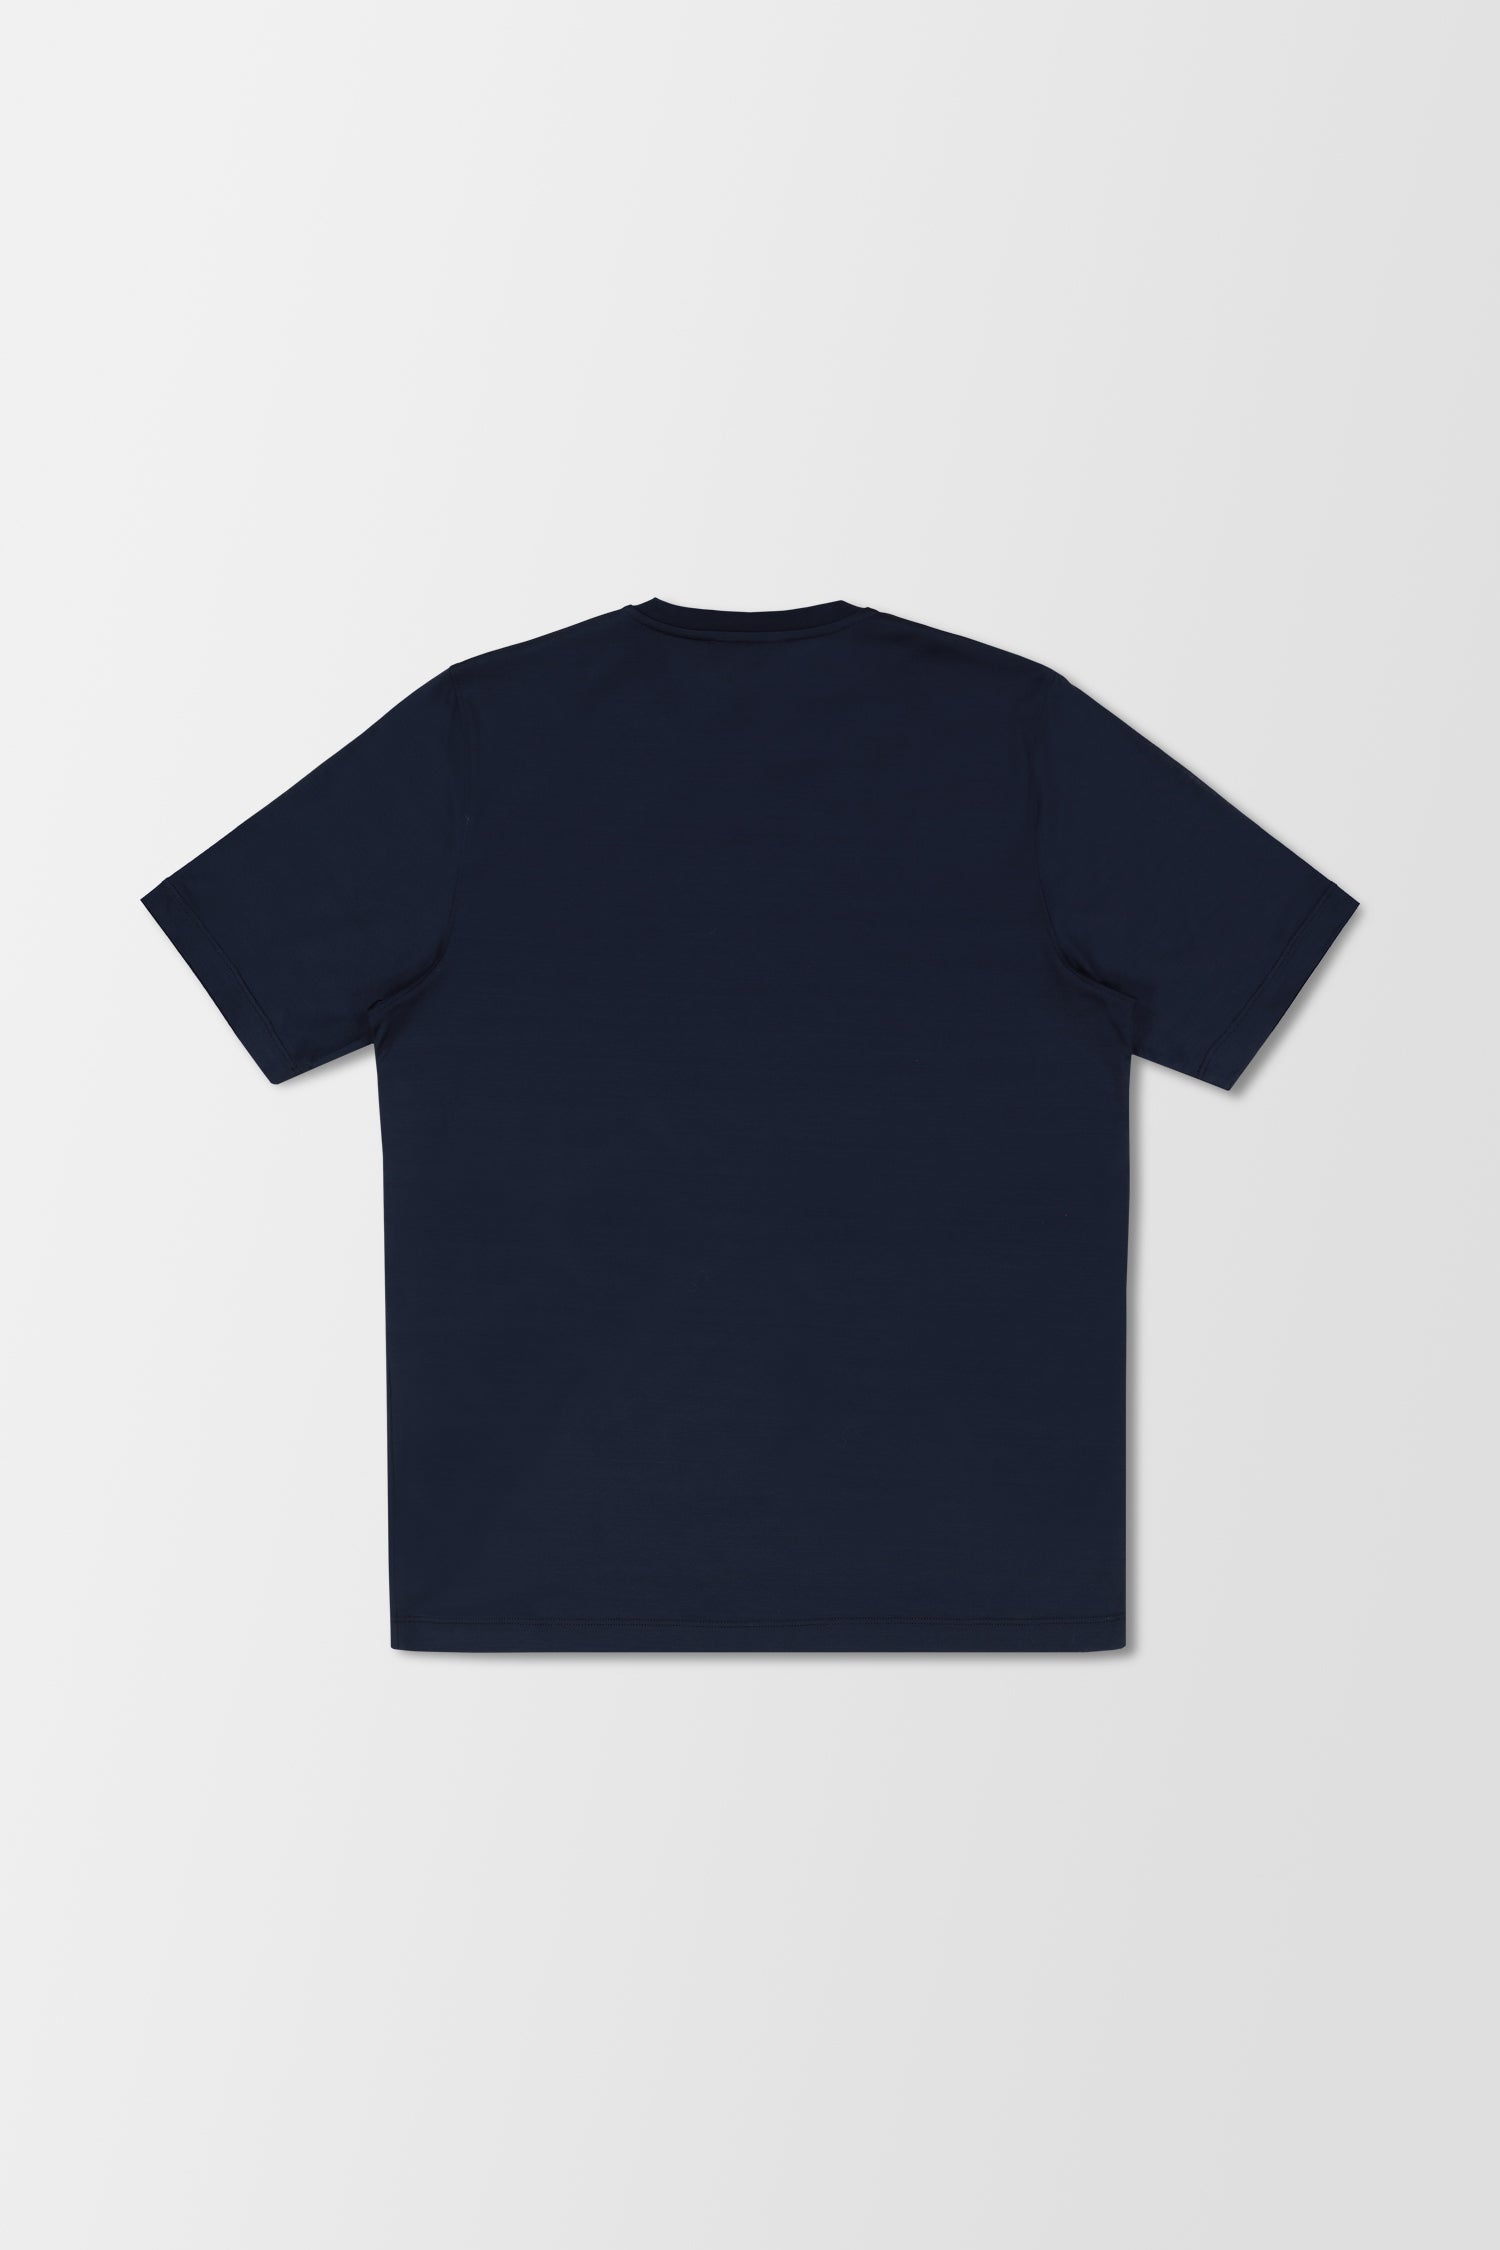 Zilli Blue Marine T-Shirt